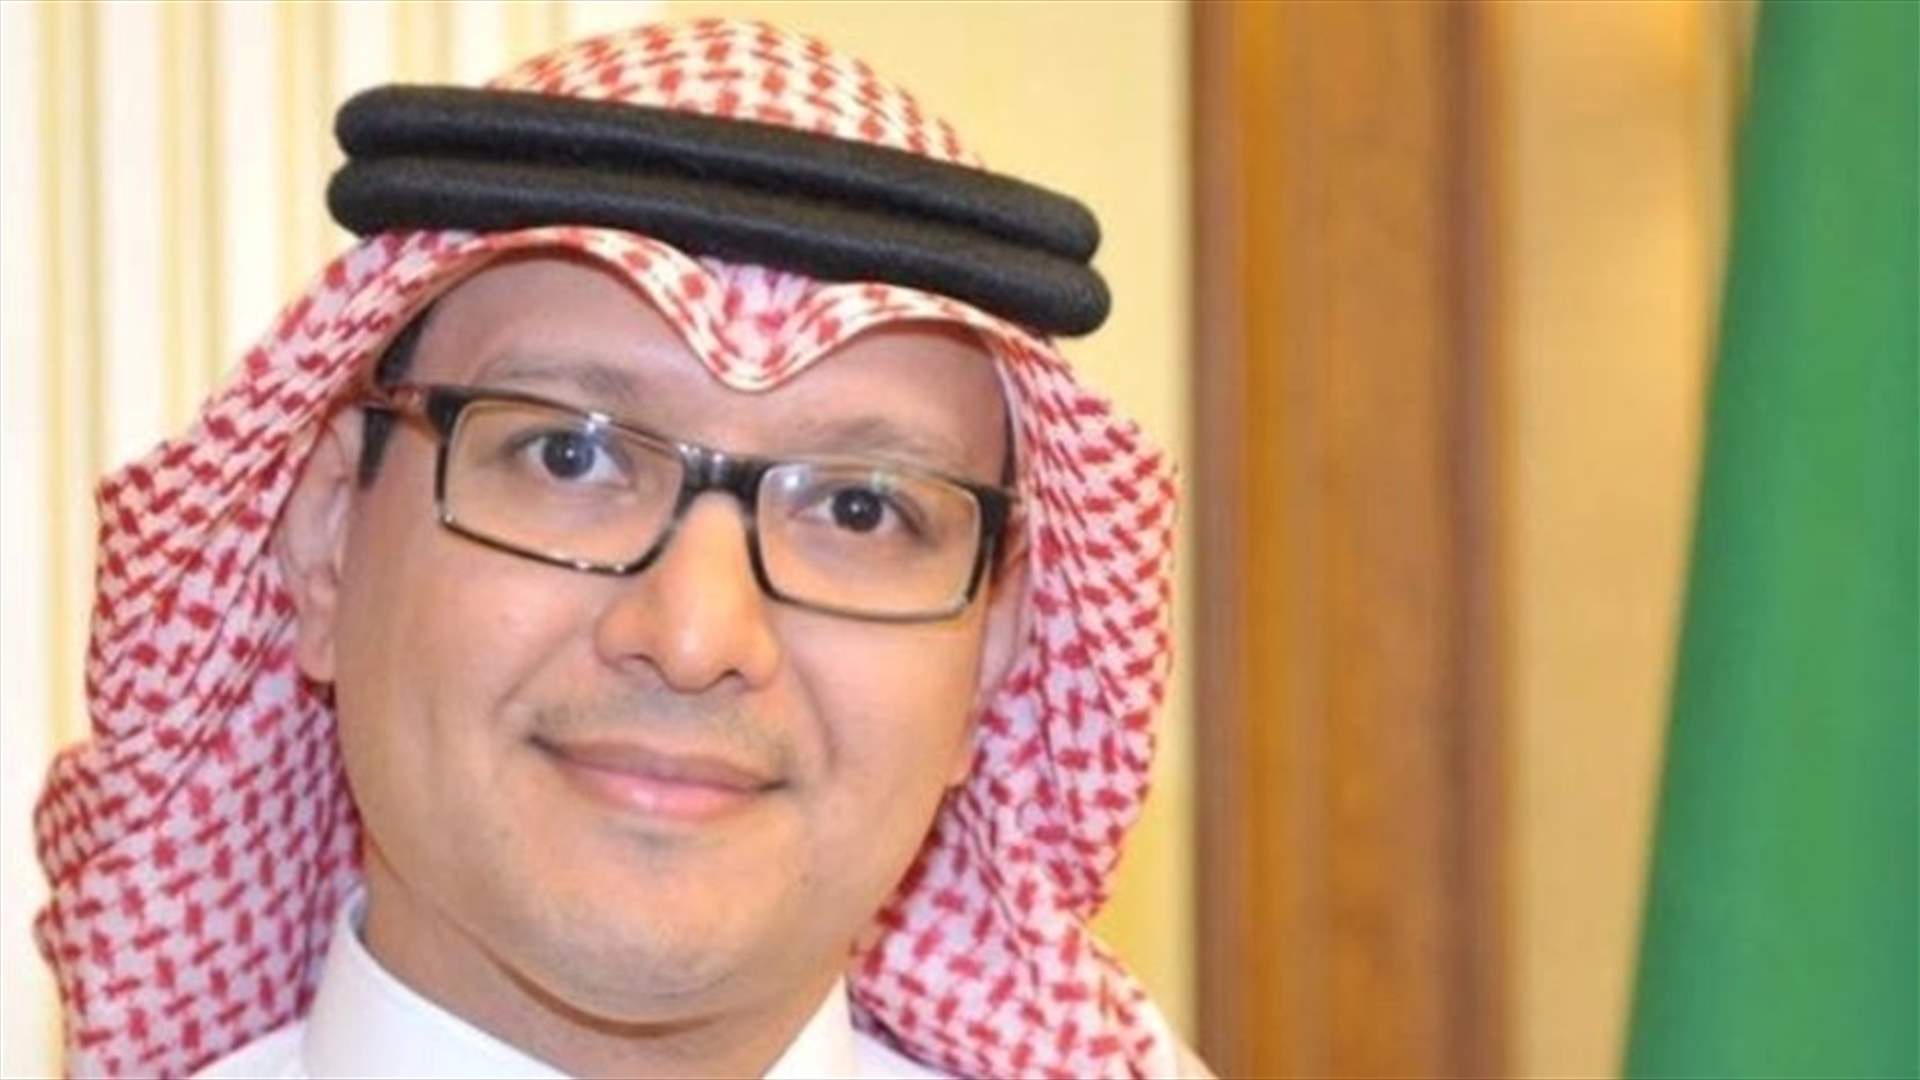 Bukhari says Human Rights report on Saudi Arabia reflects failure of attempts to tarnish kingdom’s image